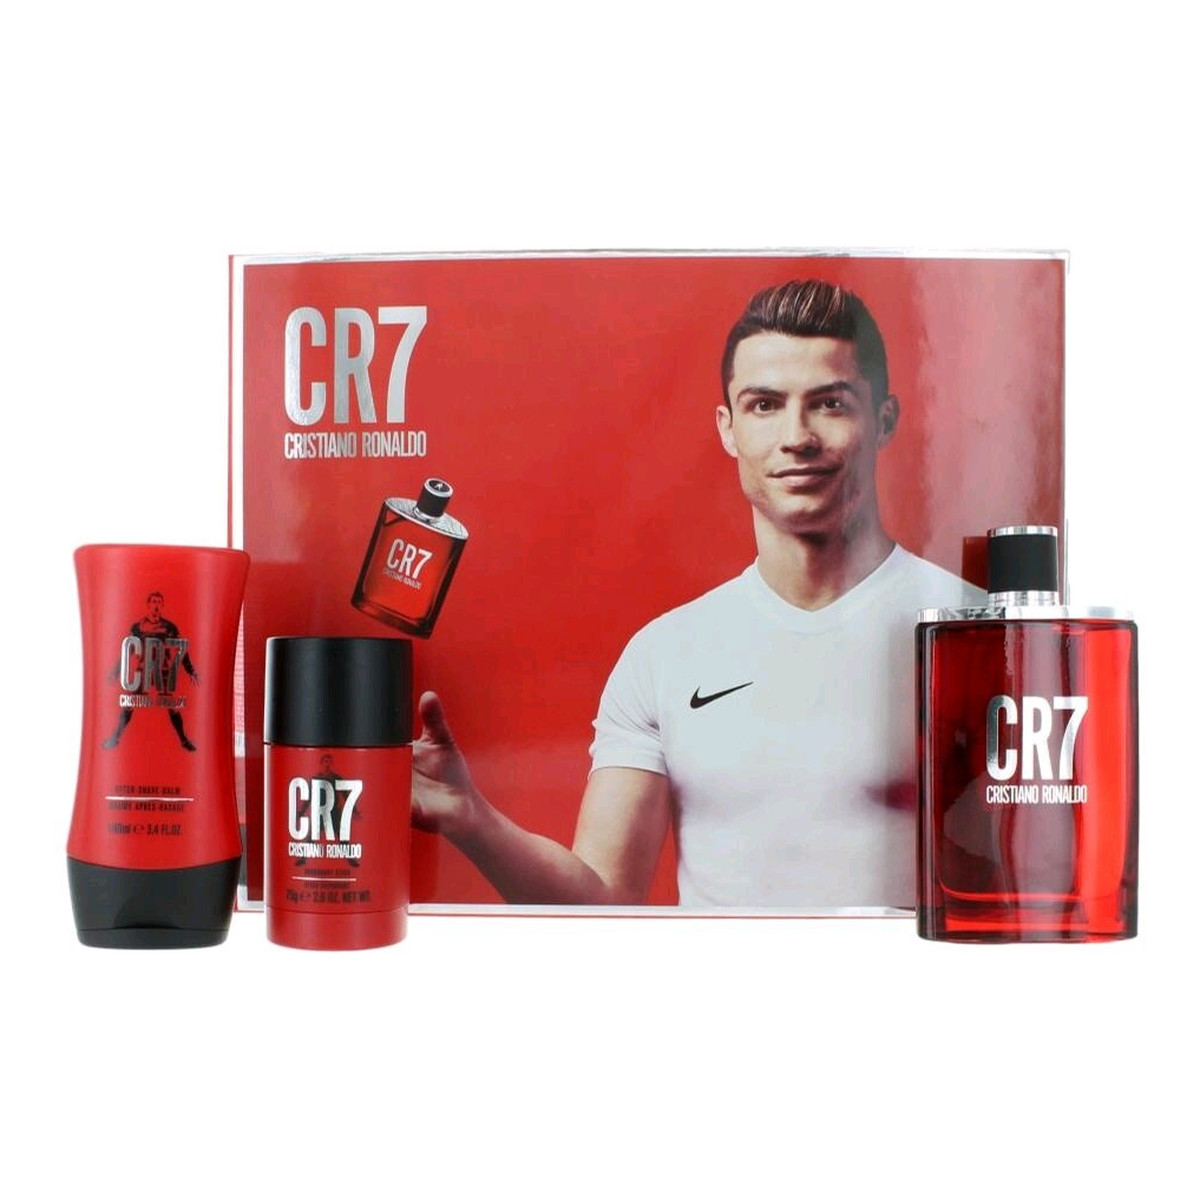 Cristiano Ronaldo CR7 Zestaw woda toaletowa spray 100ml + dezodorant sztyft 75g + balsam po goleniu 100ml